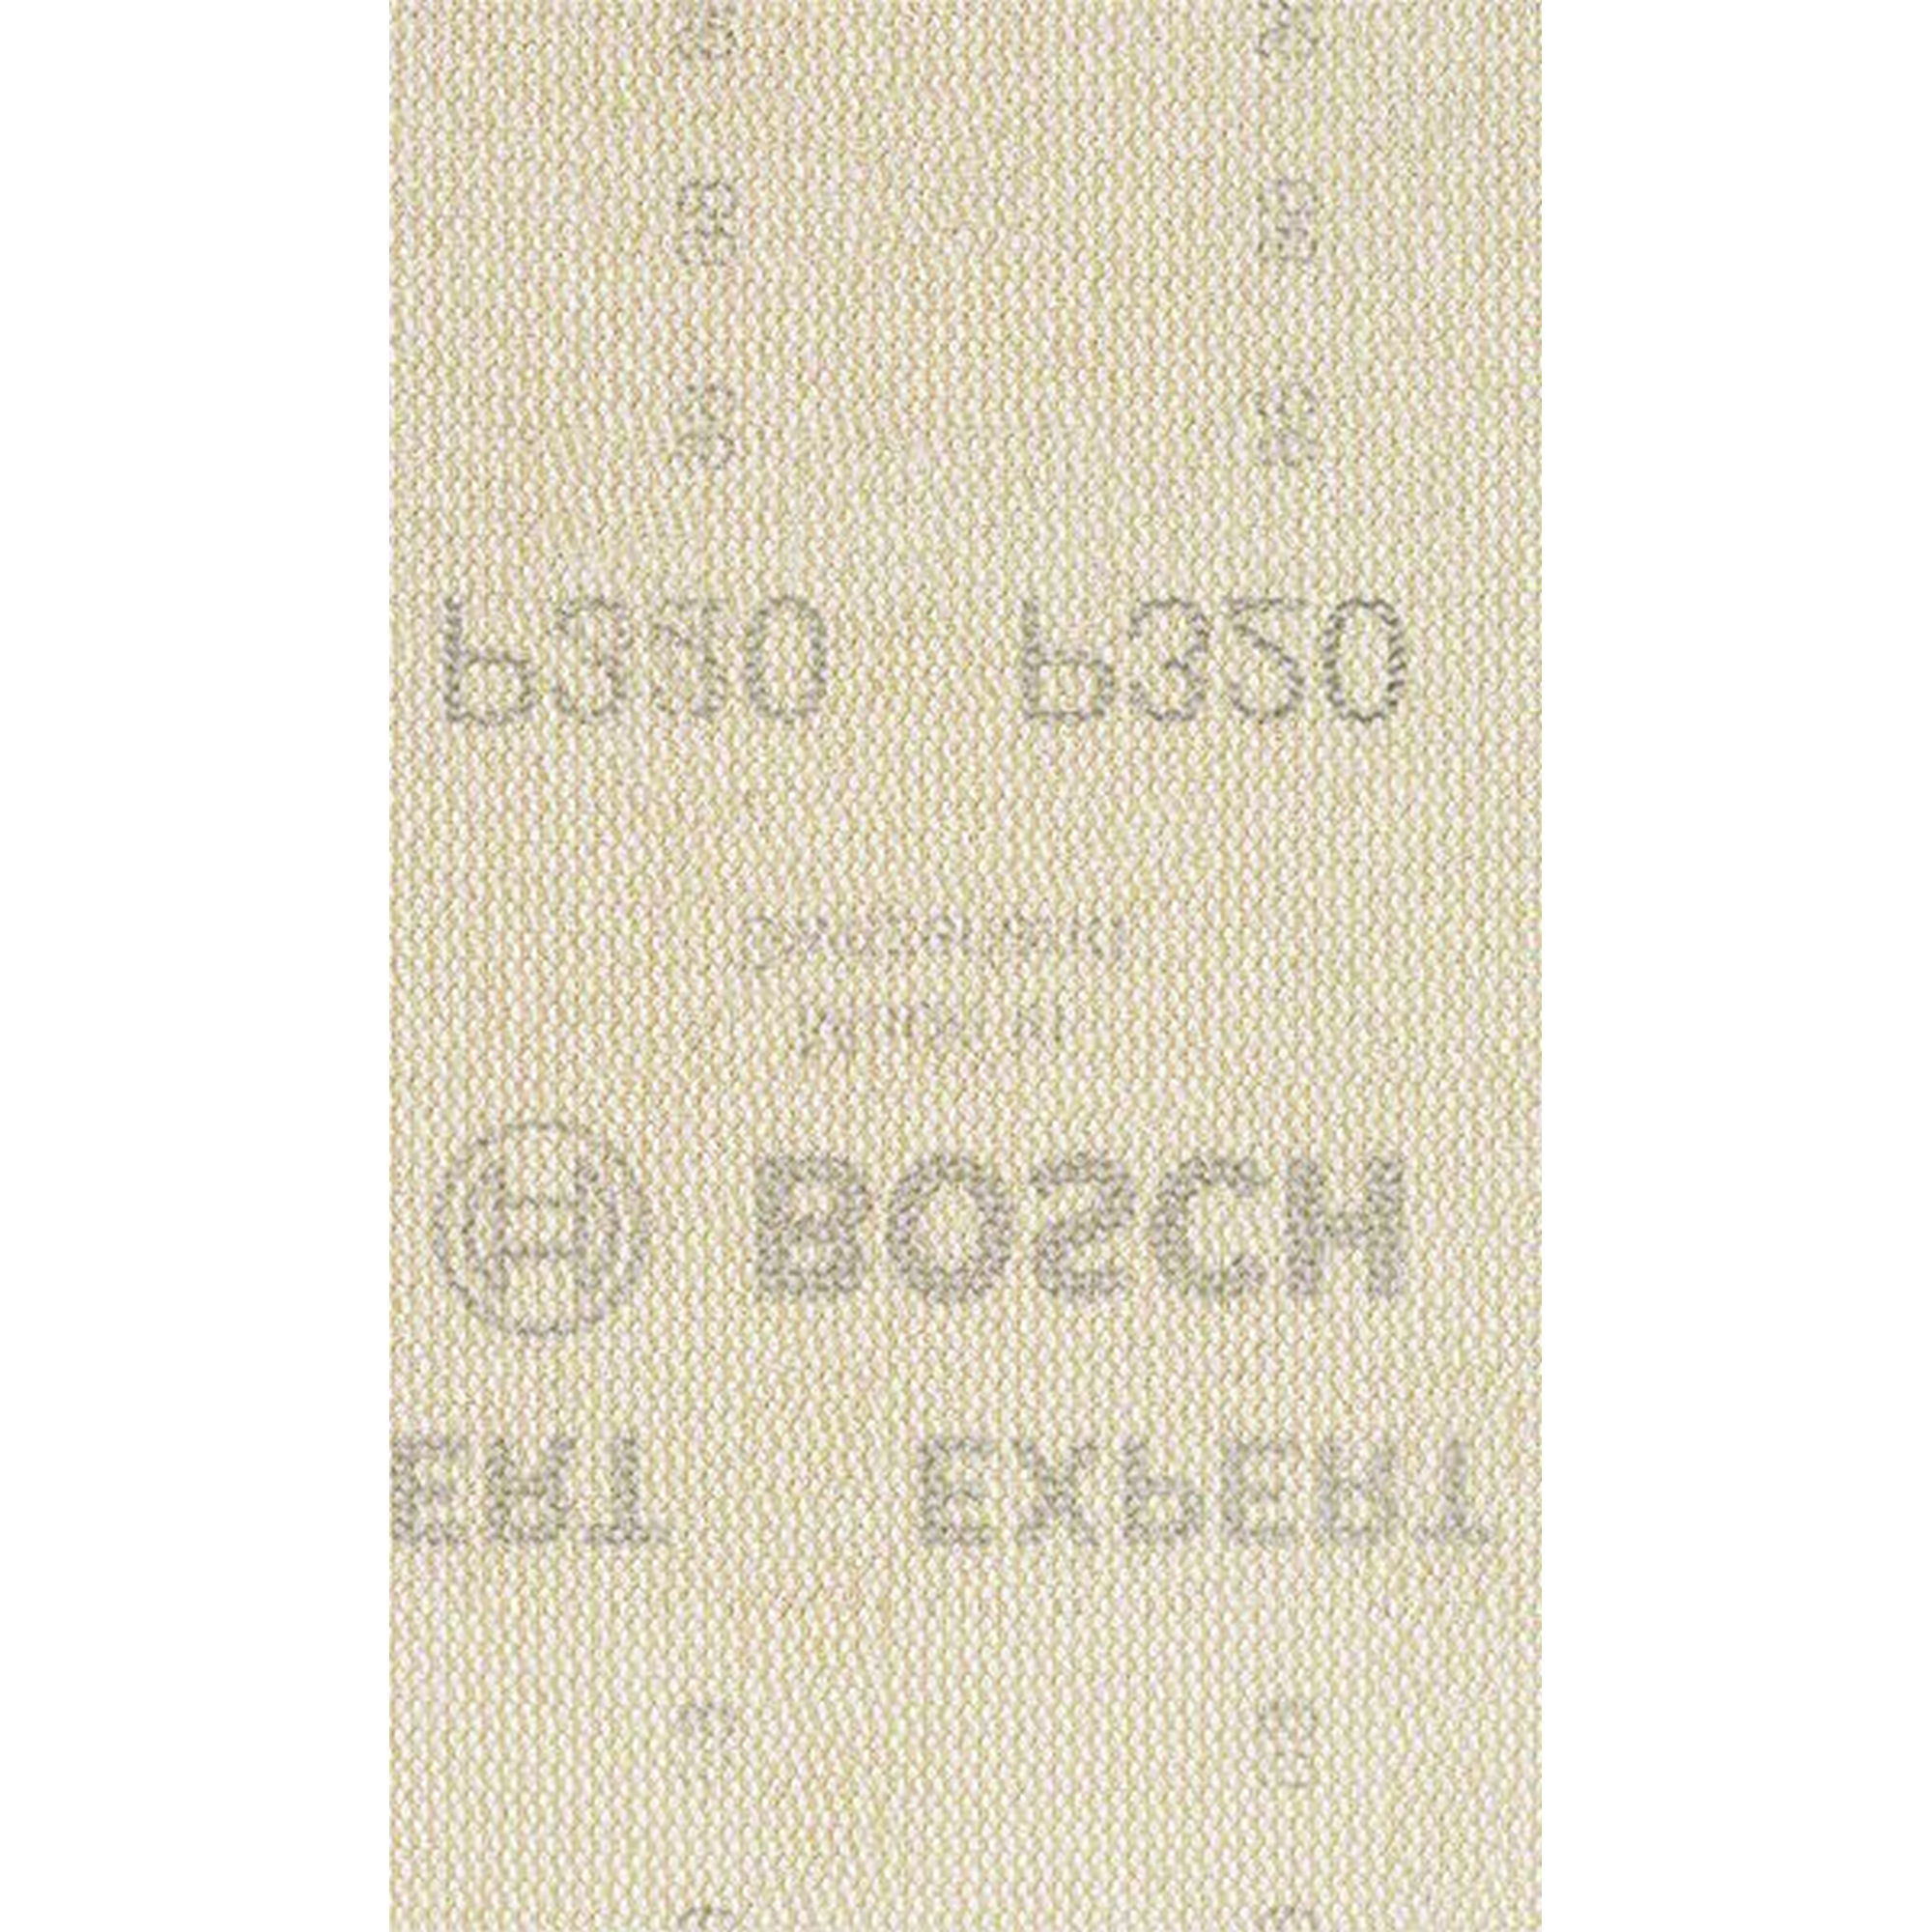 Exzenter-Netzschleifblatt 'Expert M480' 80 x 133 mm Körnung 320, 10 Stück + product picture